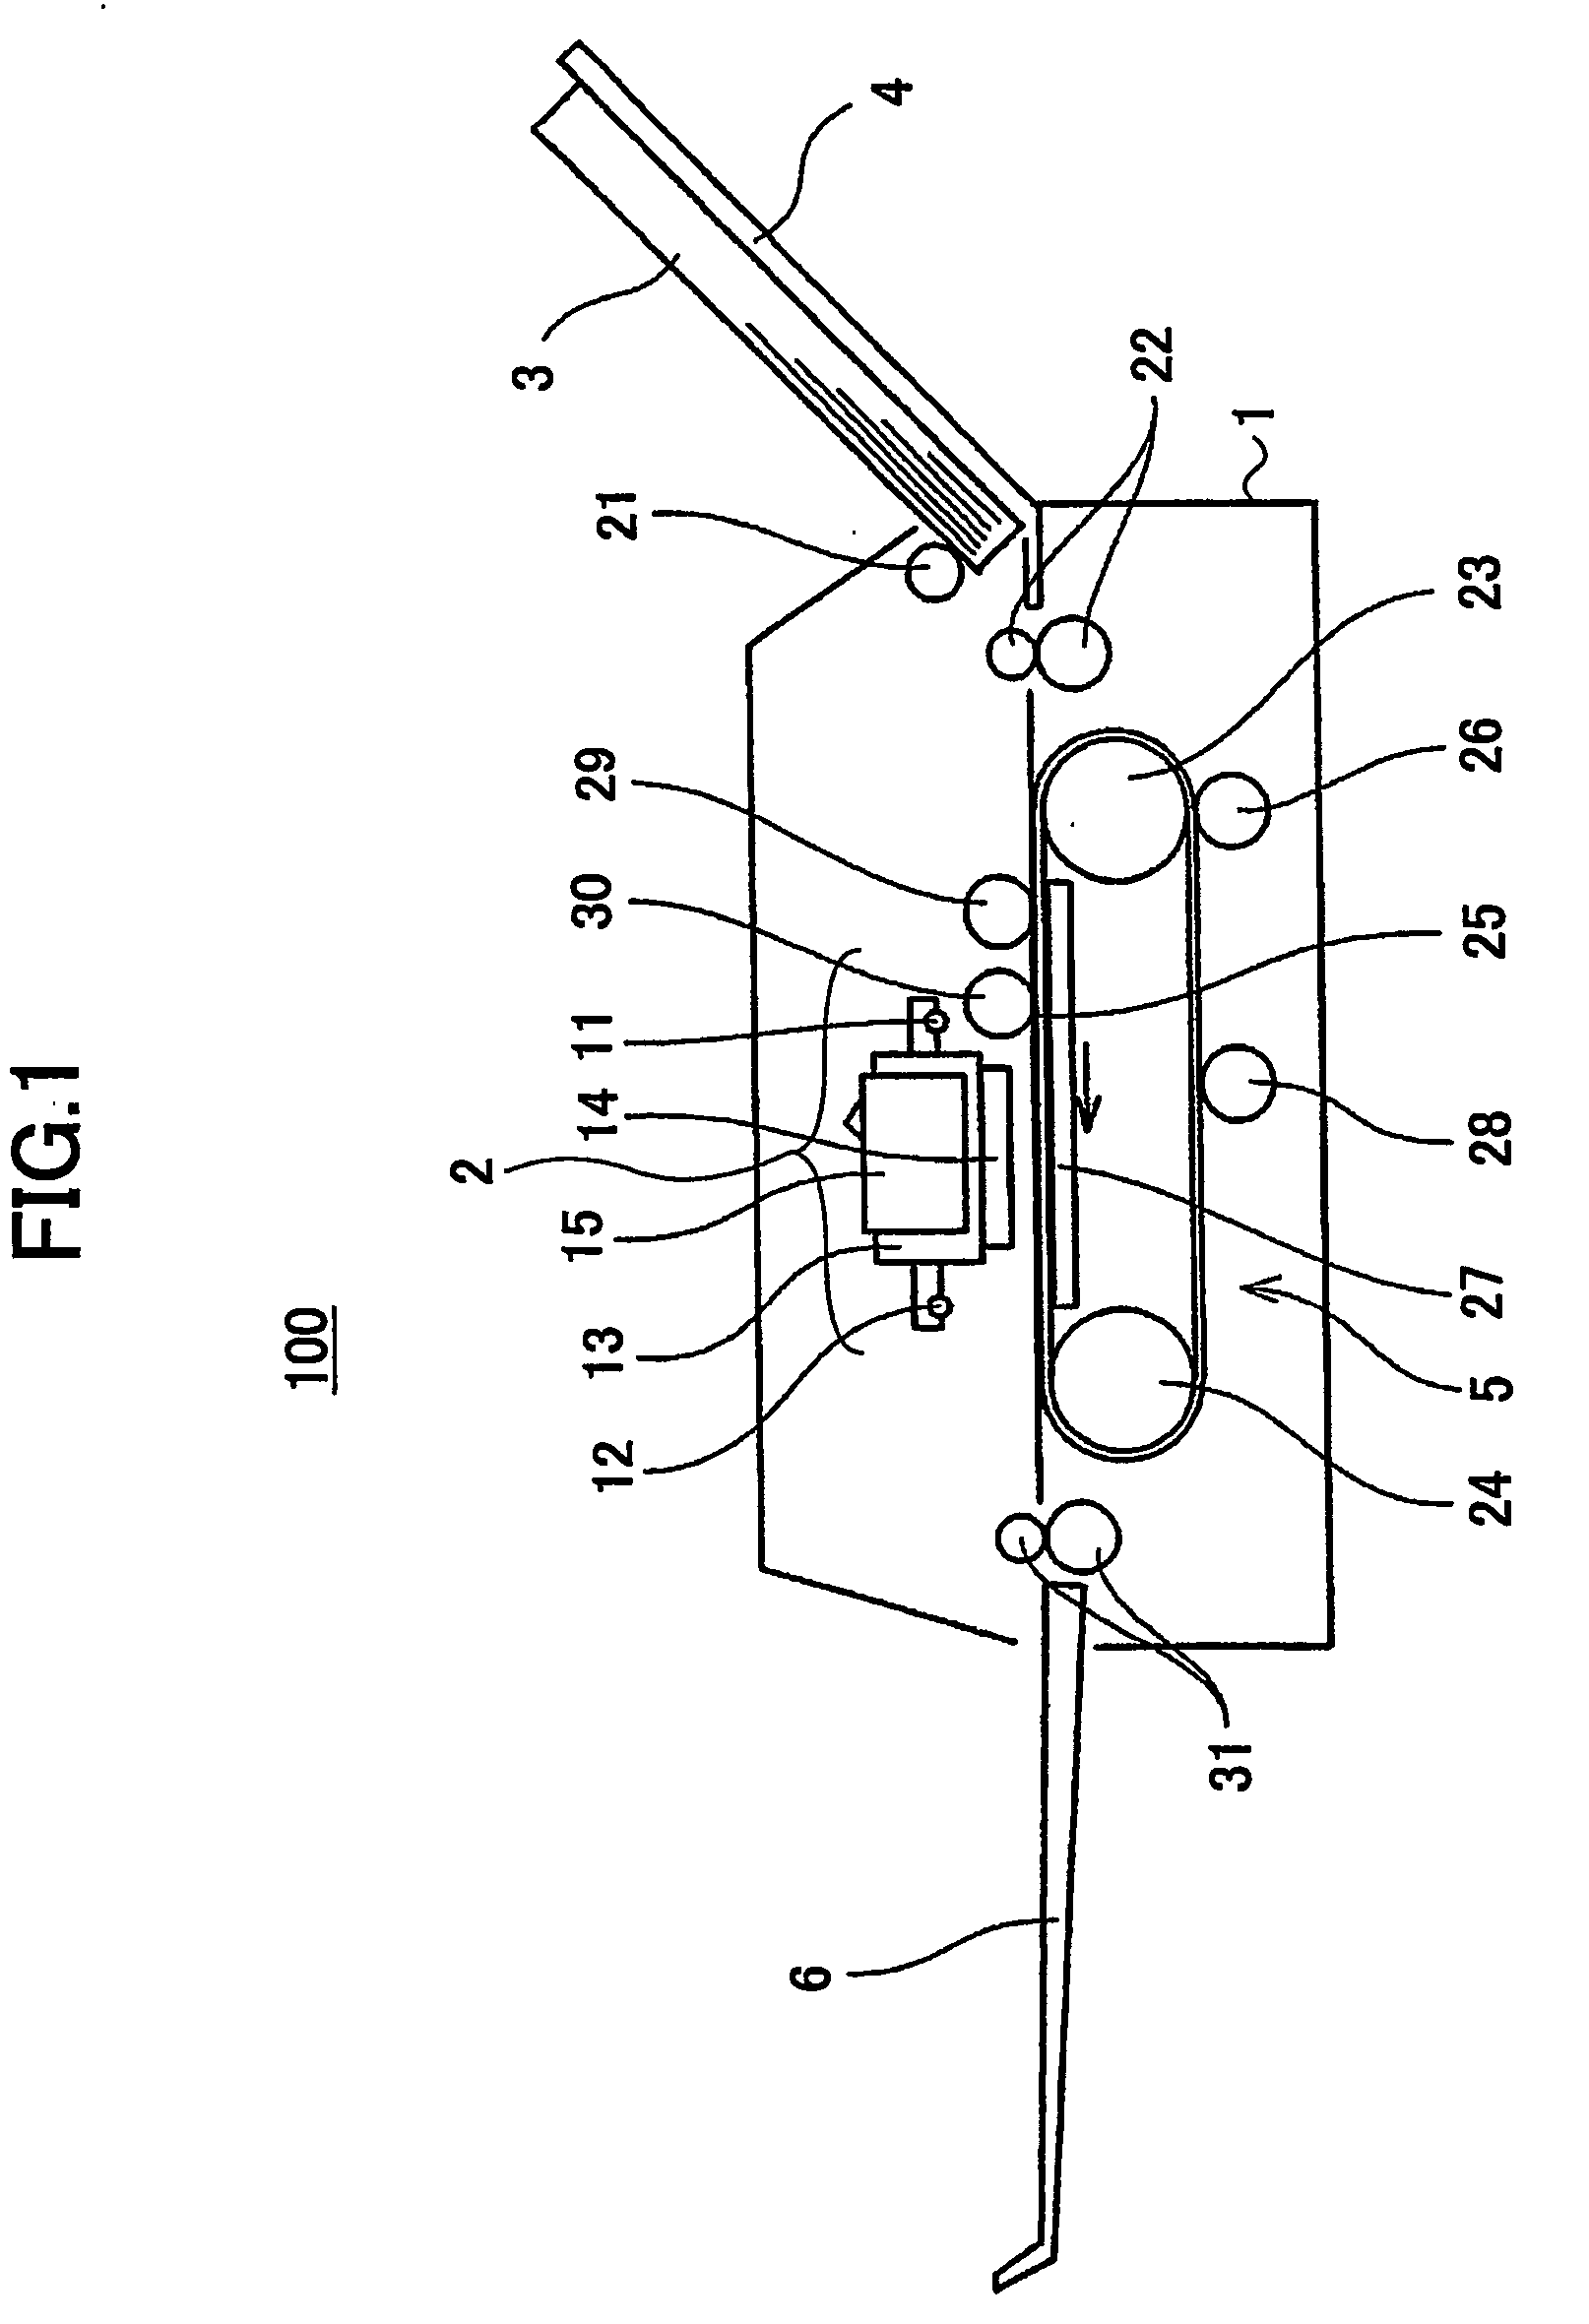 Image forming apparatus, recording liquid, conveyor belt, recording liquid cartridge